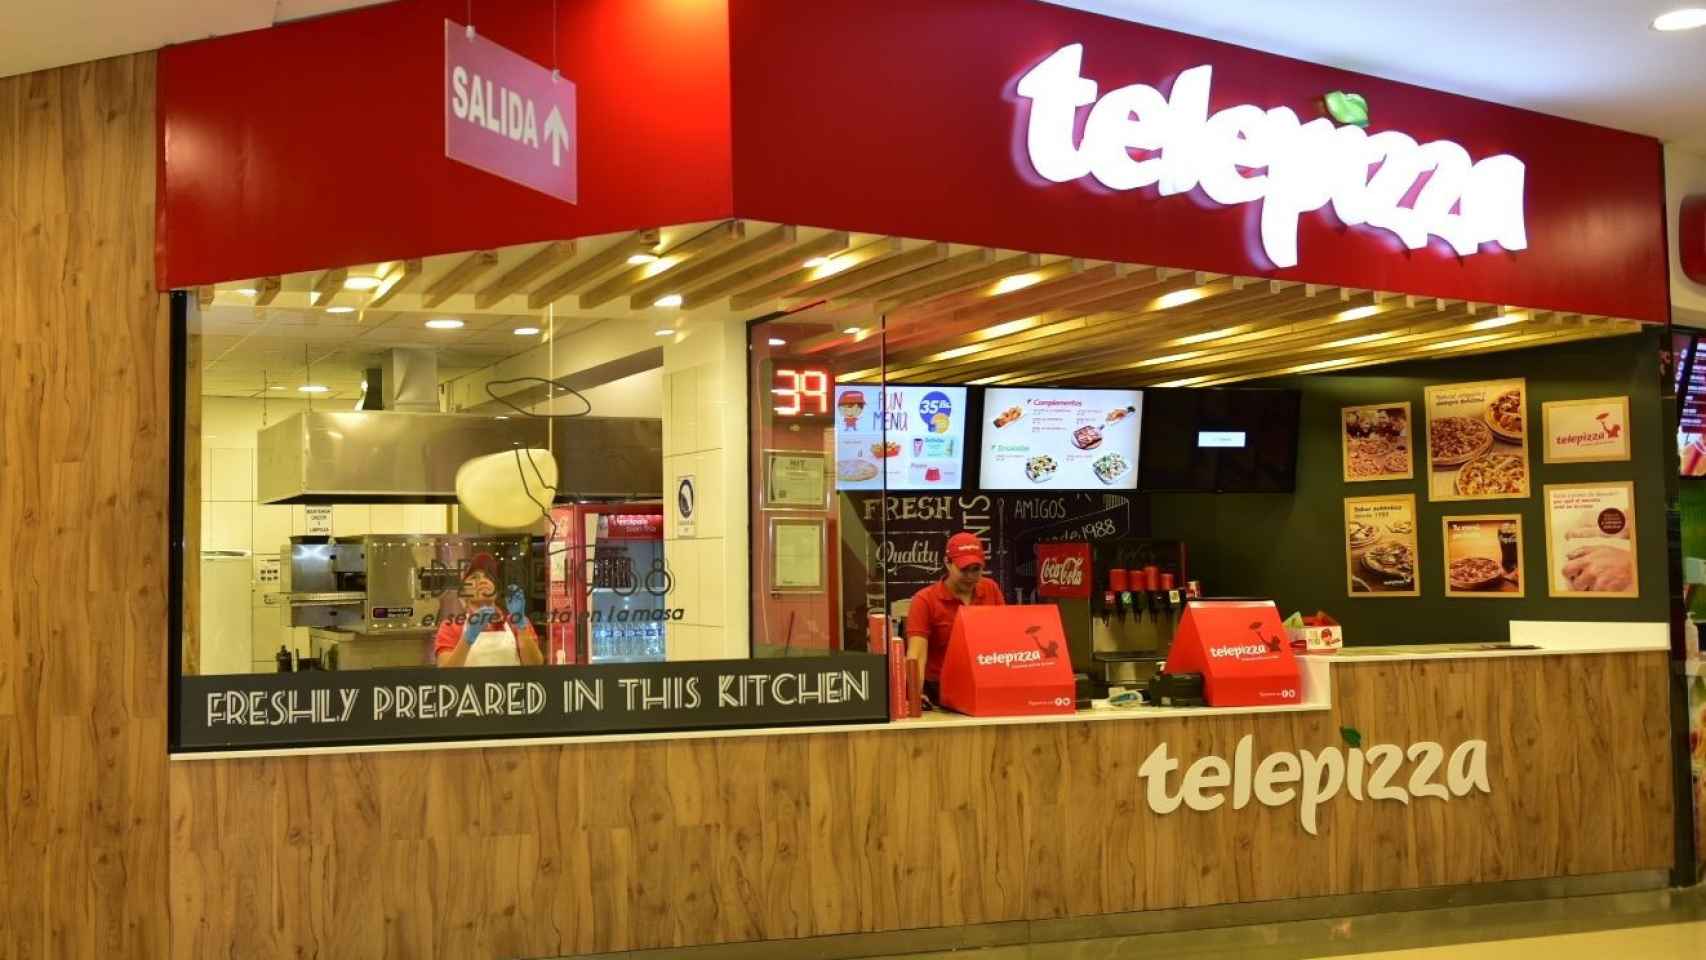 Exterior de un local comercial de la compañía Telepizza